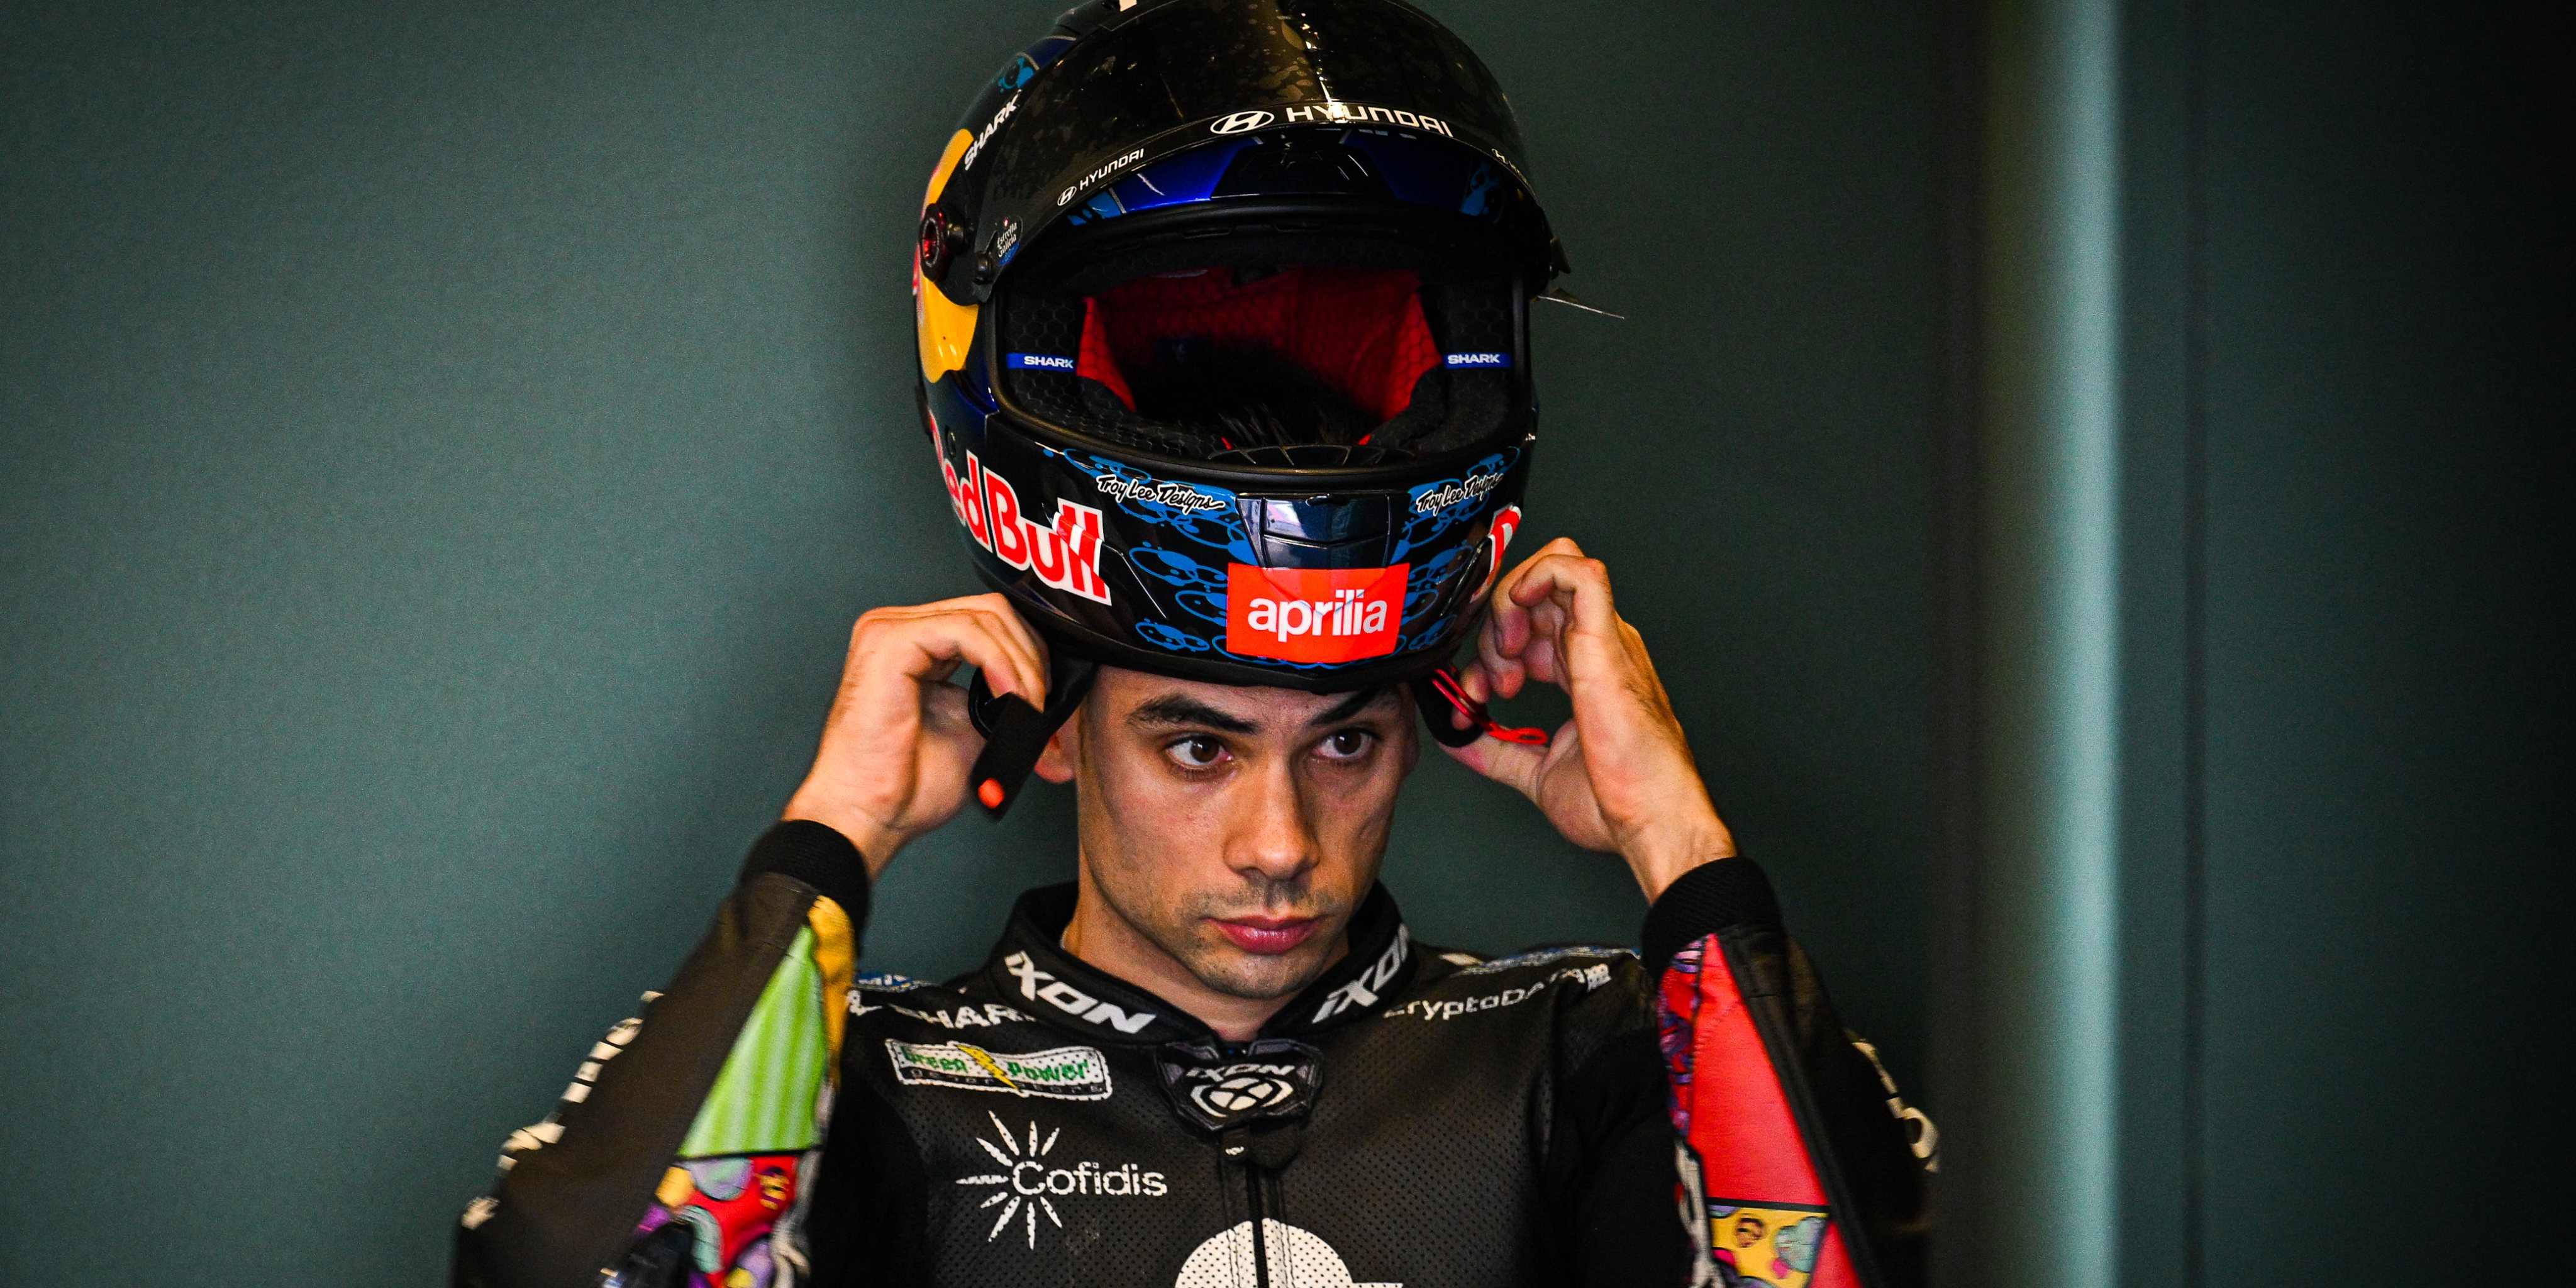 Da KTM para a Ducati. O próximo destino de Miguel Oliveira parece